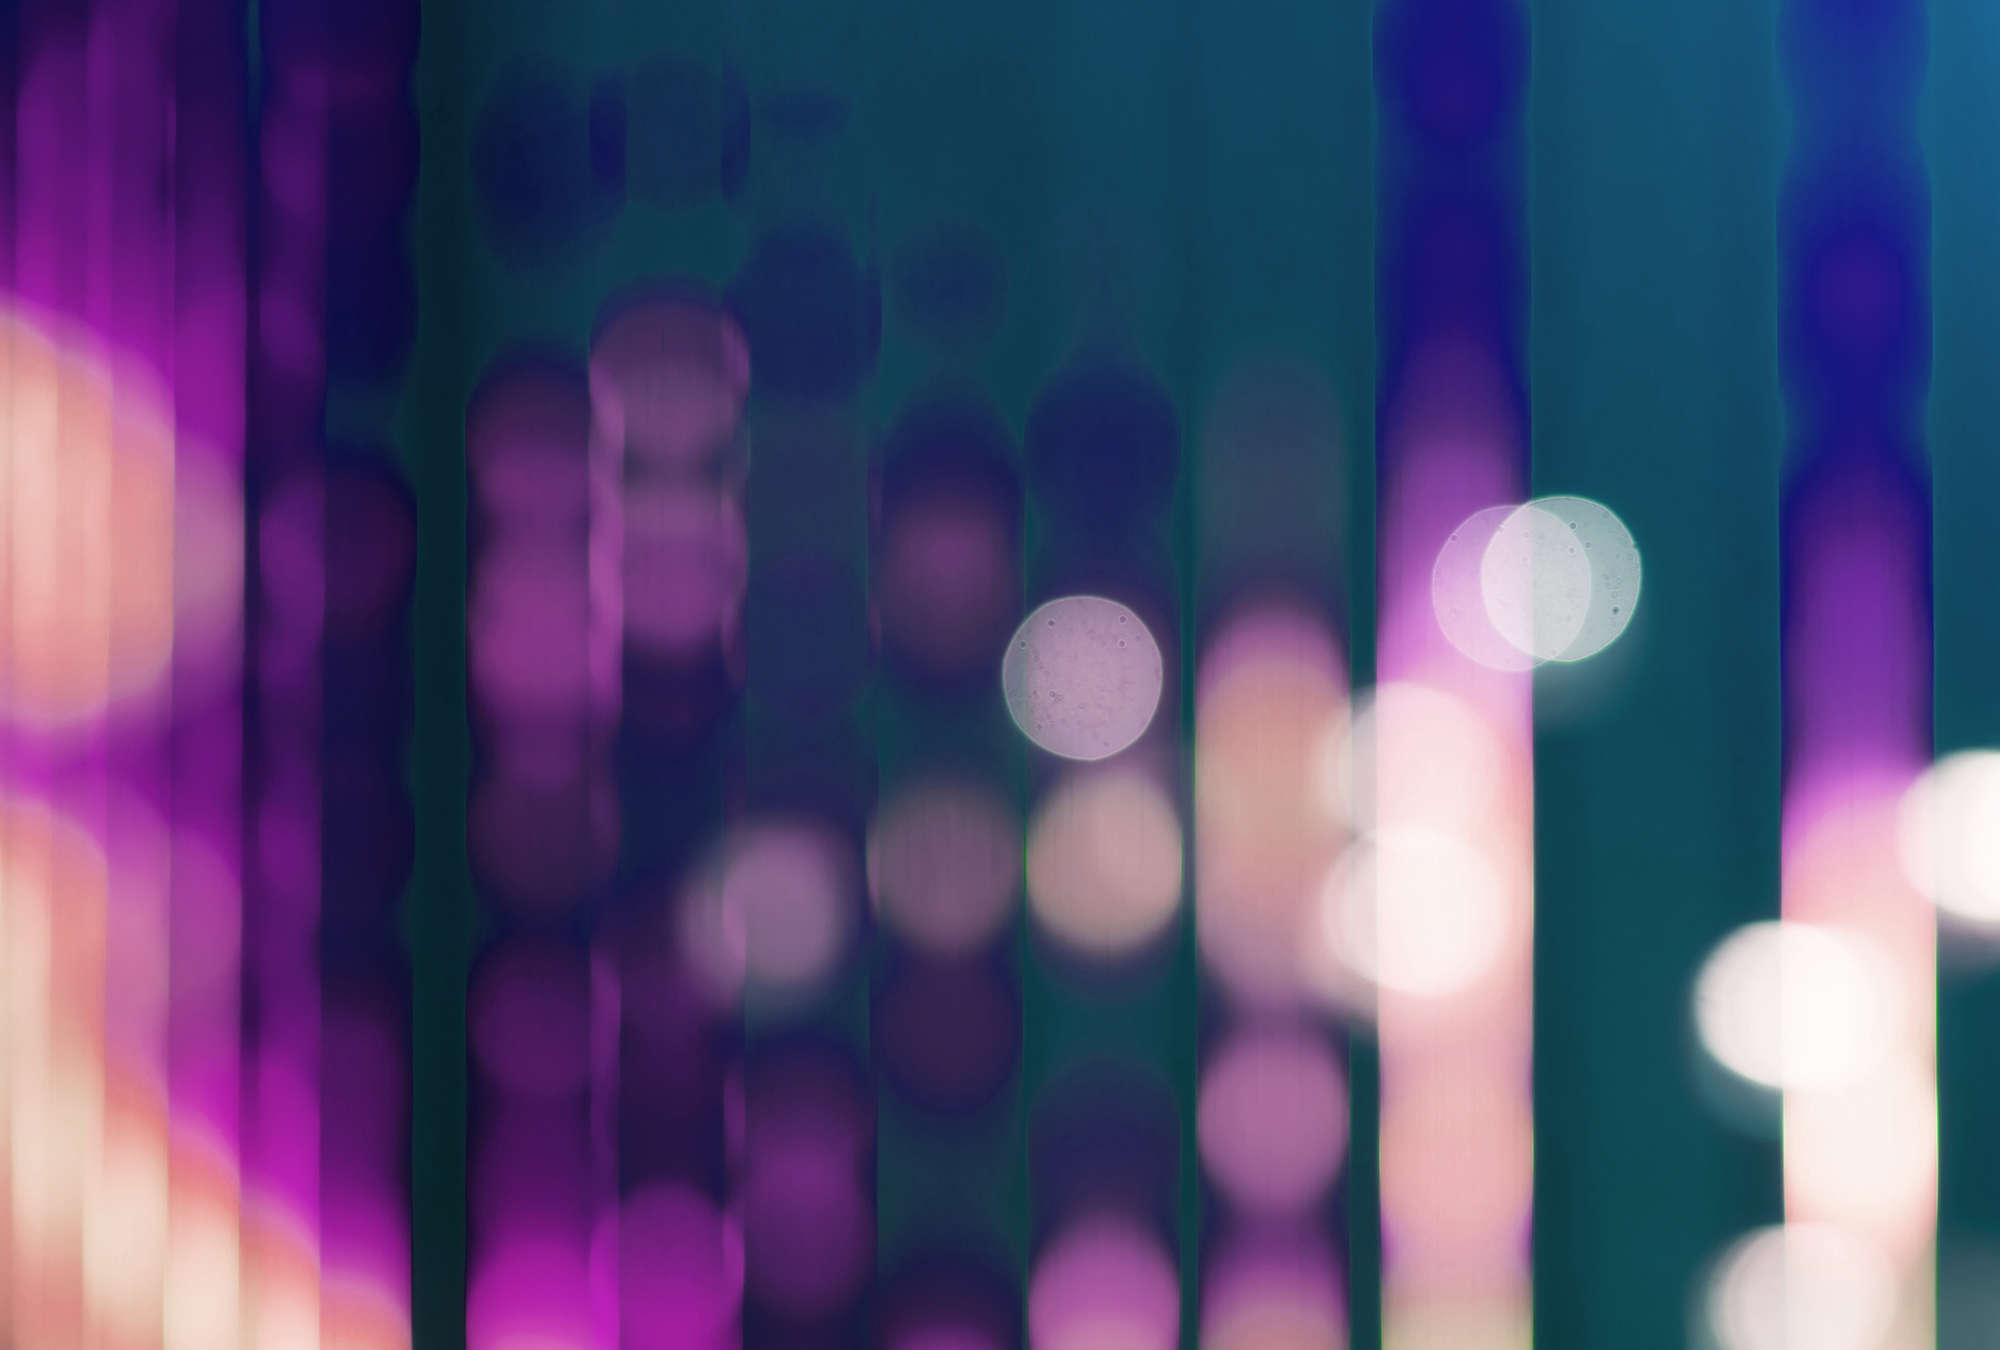             Big City Lights 3 - Fotobehang met lichtreflecties in violet - Blauw, Violet | Parelmoer glad vlies
        